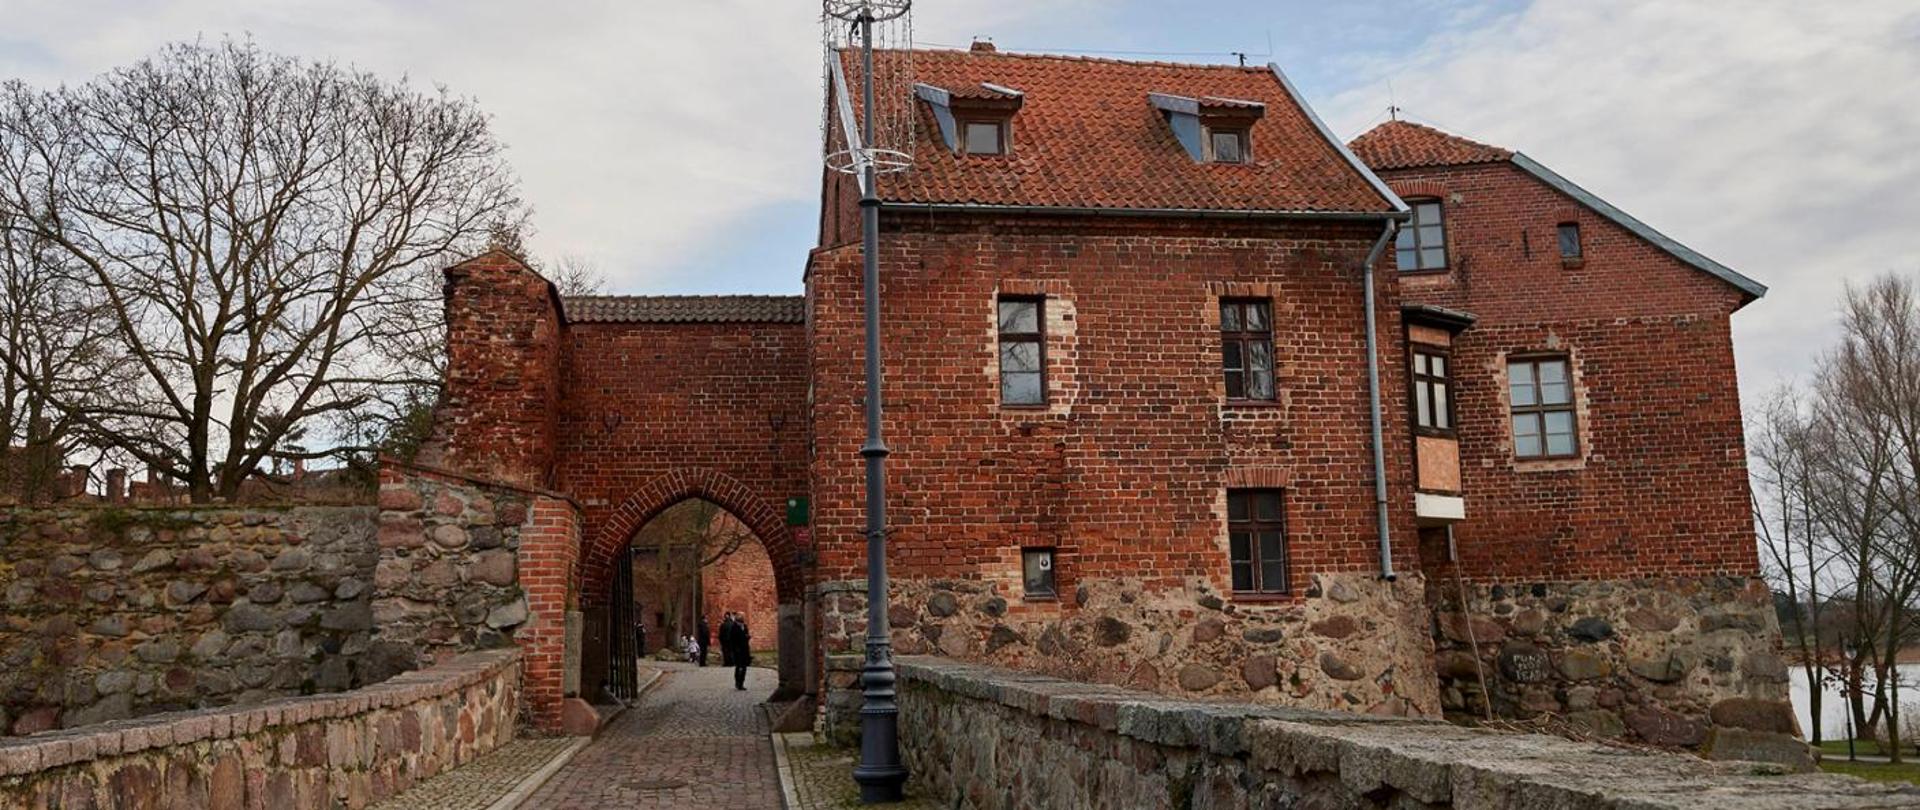 Zamek w Sztumie - Oddział Muzeum Zamkowego w Malborku